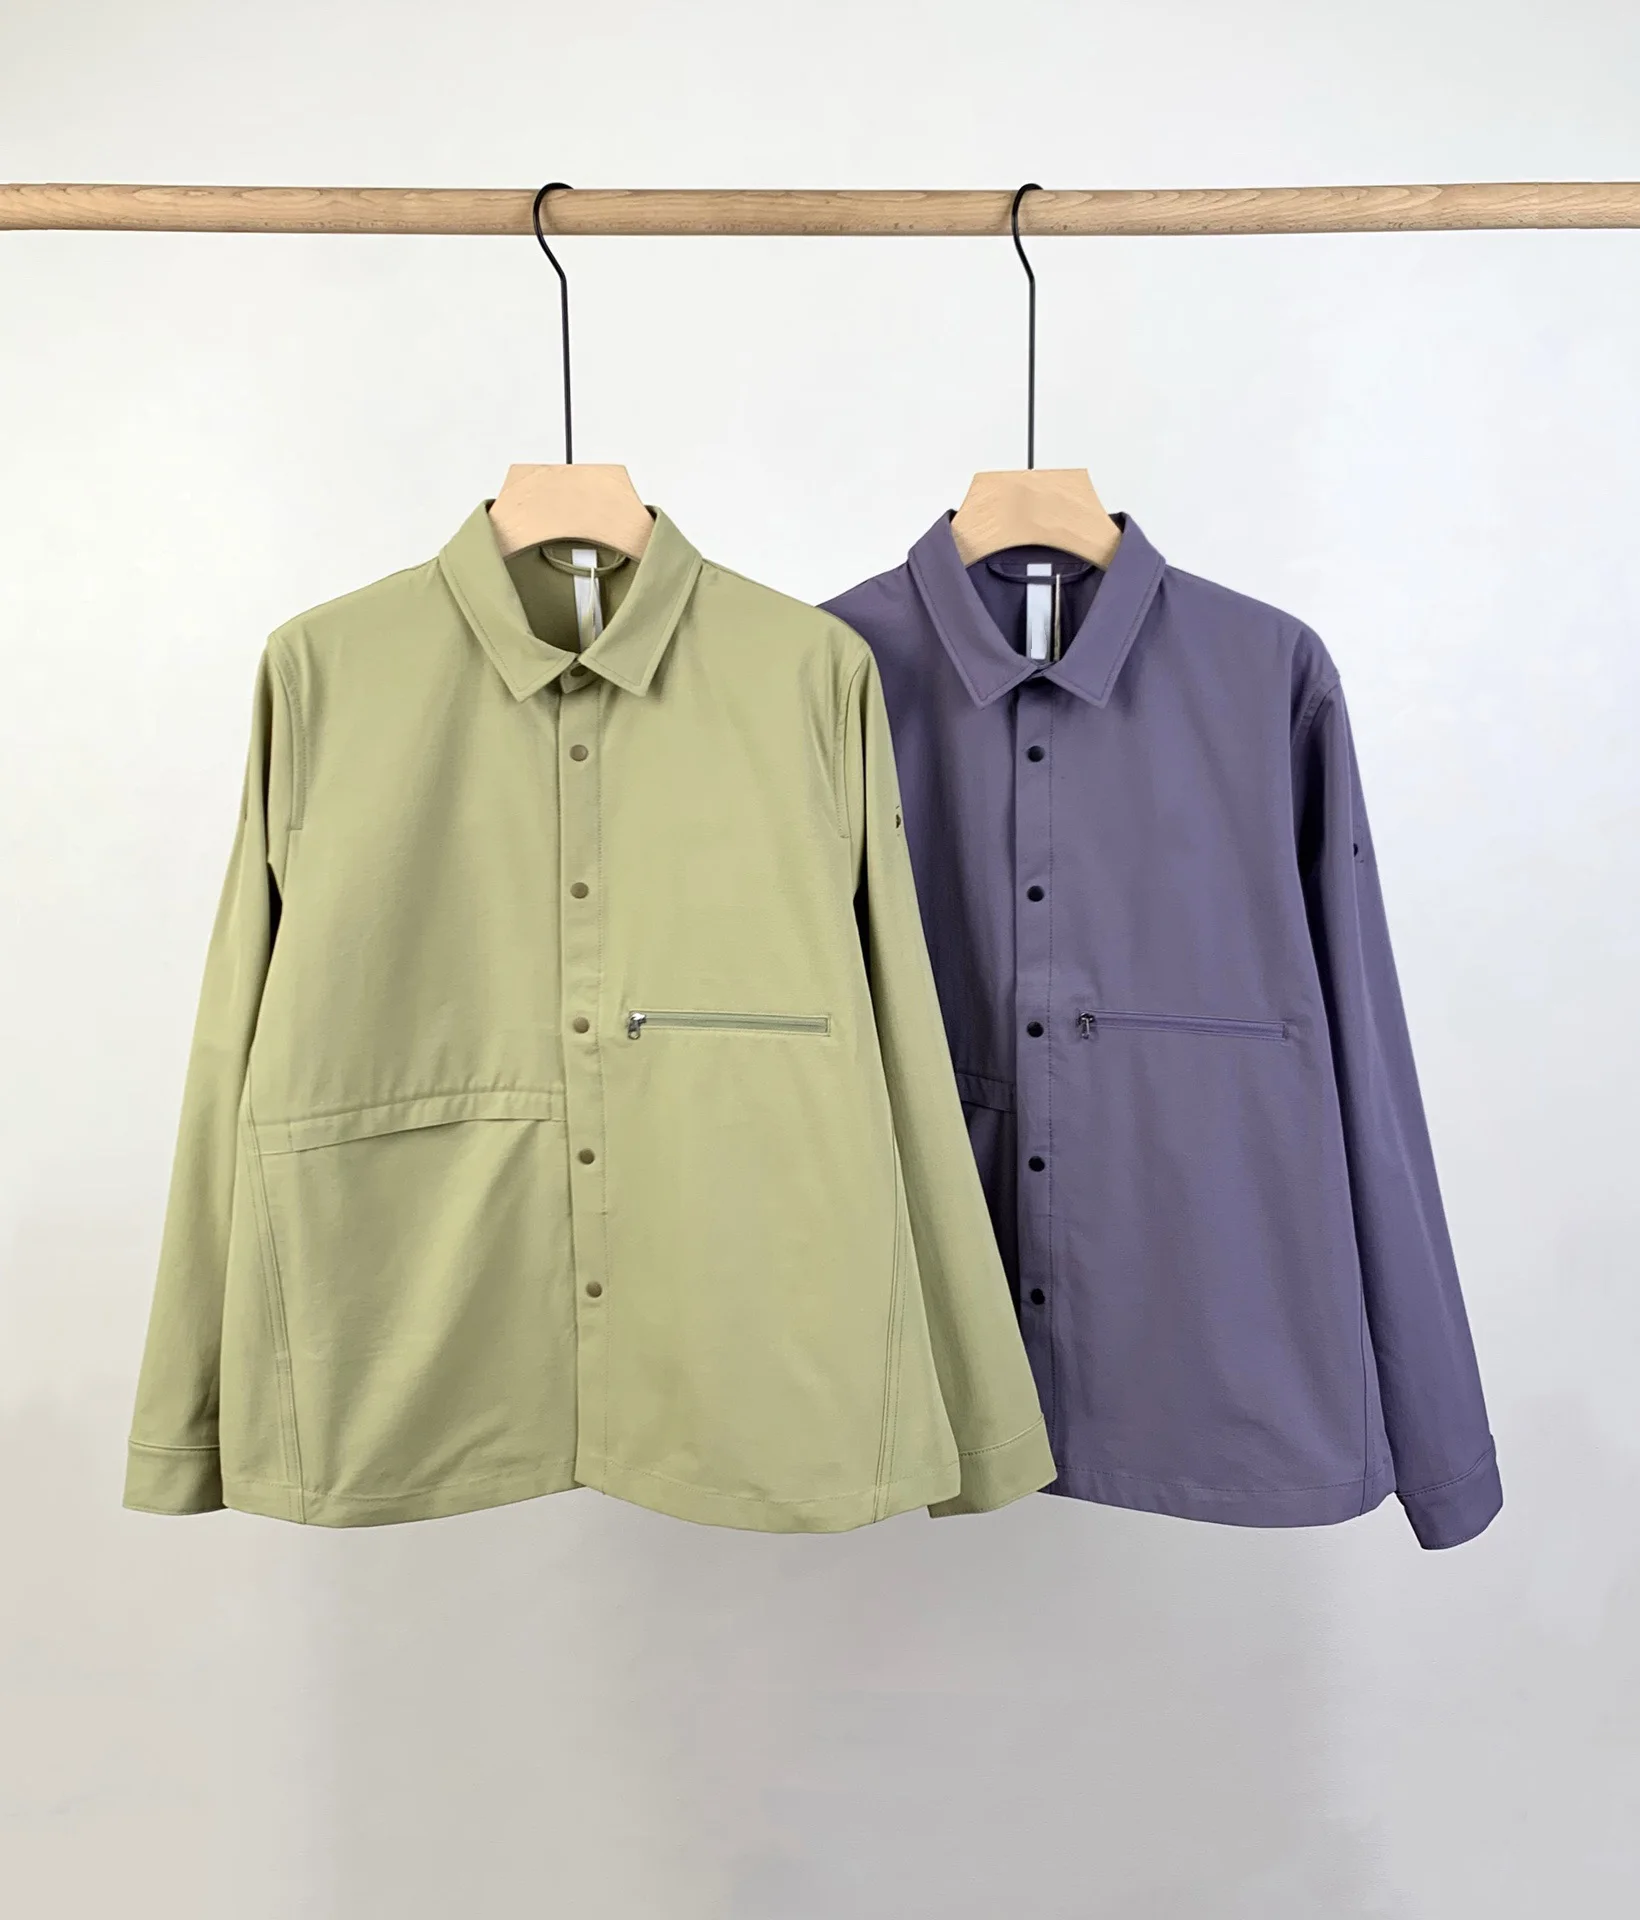 Tričko styl lehká bunda, stylová barva a funkční tkaniny kombinaci s vodou a funkce0